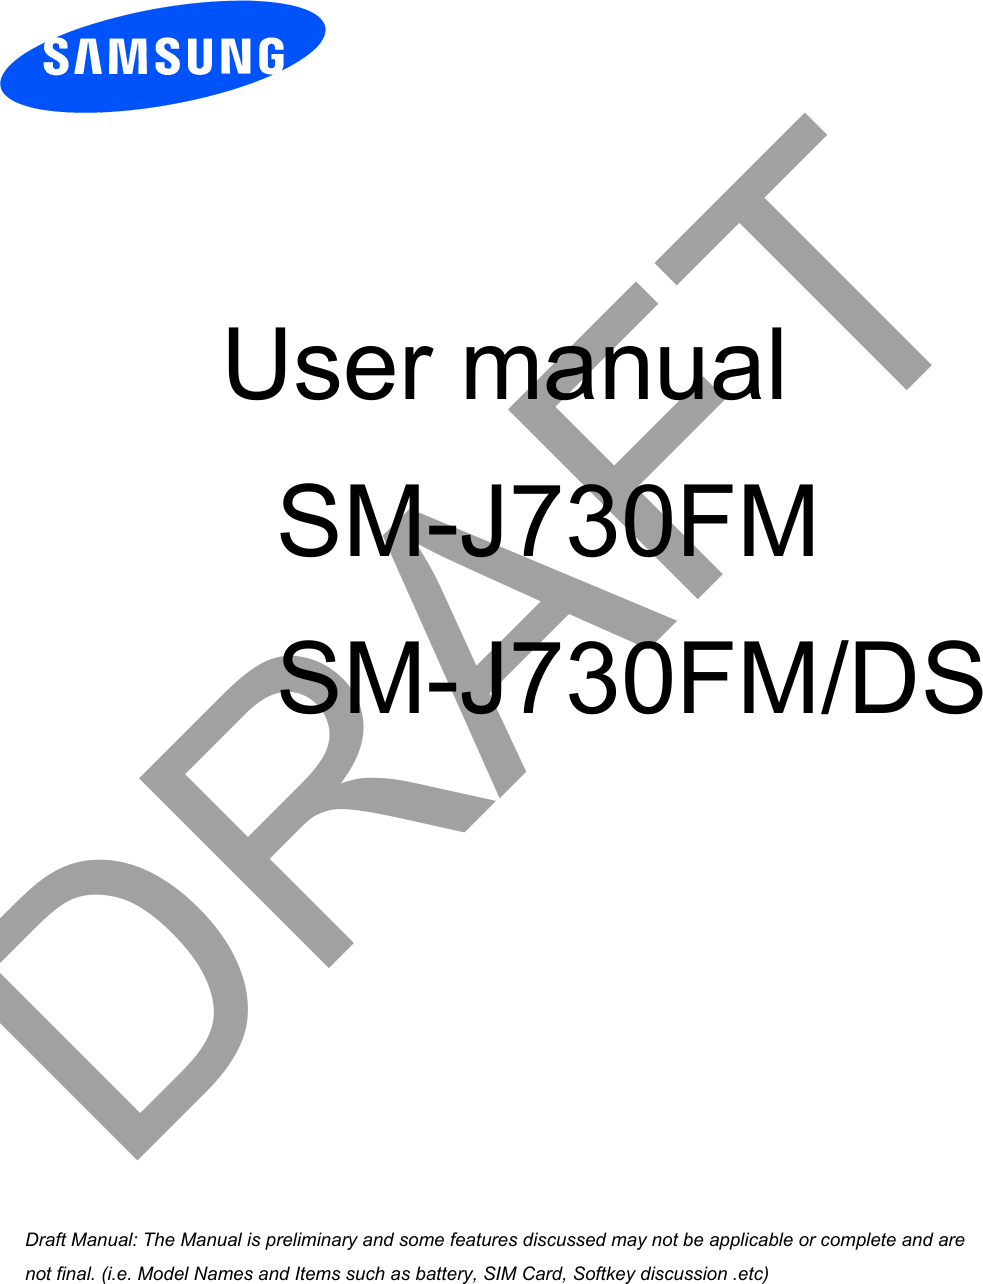  User manual       SM-J730FM       SM-J730FM/DSDRAFTa ana  ana  na and  a dd a n  aa   and a n na  d a and   a a  ad  dn 